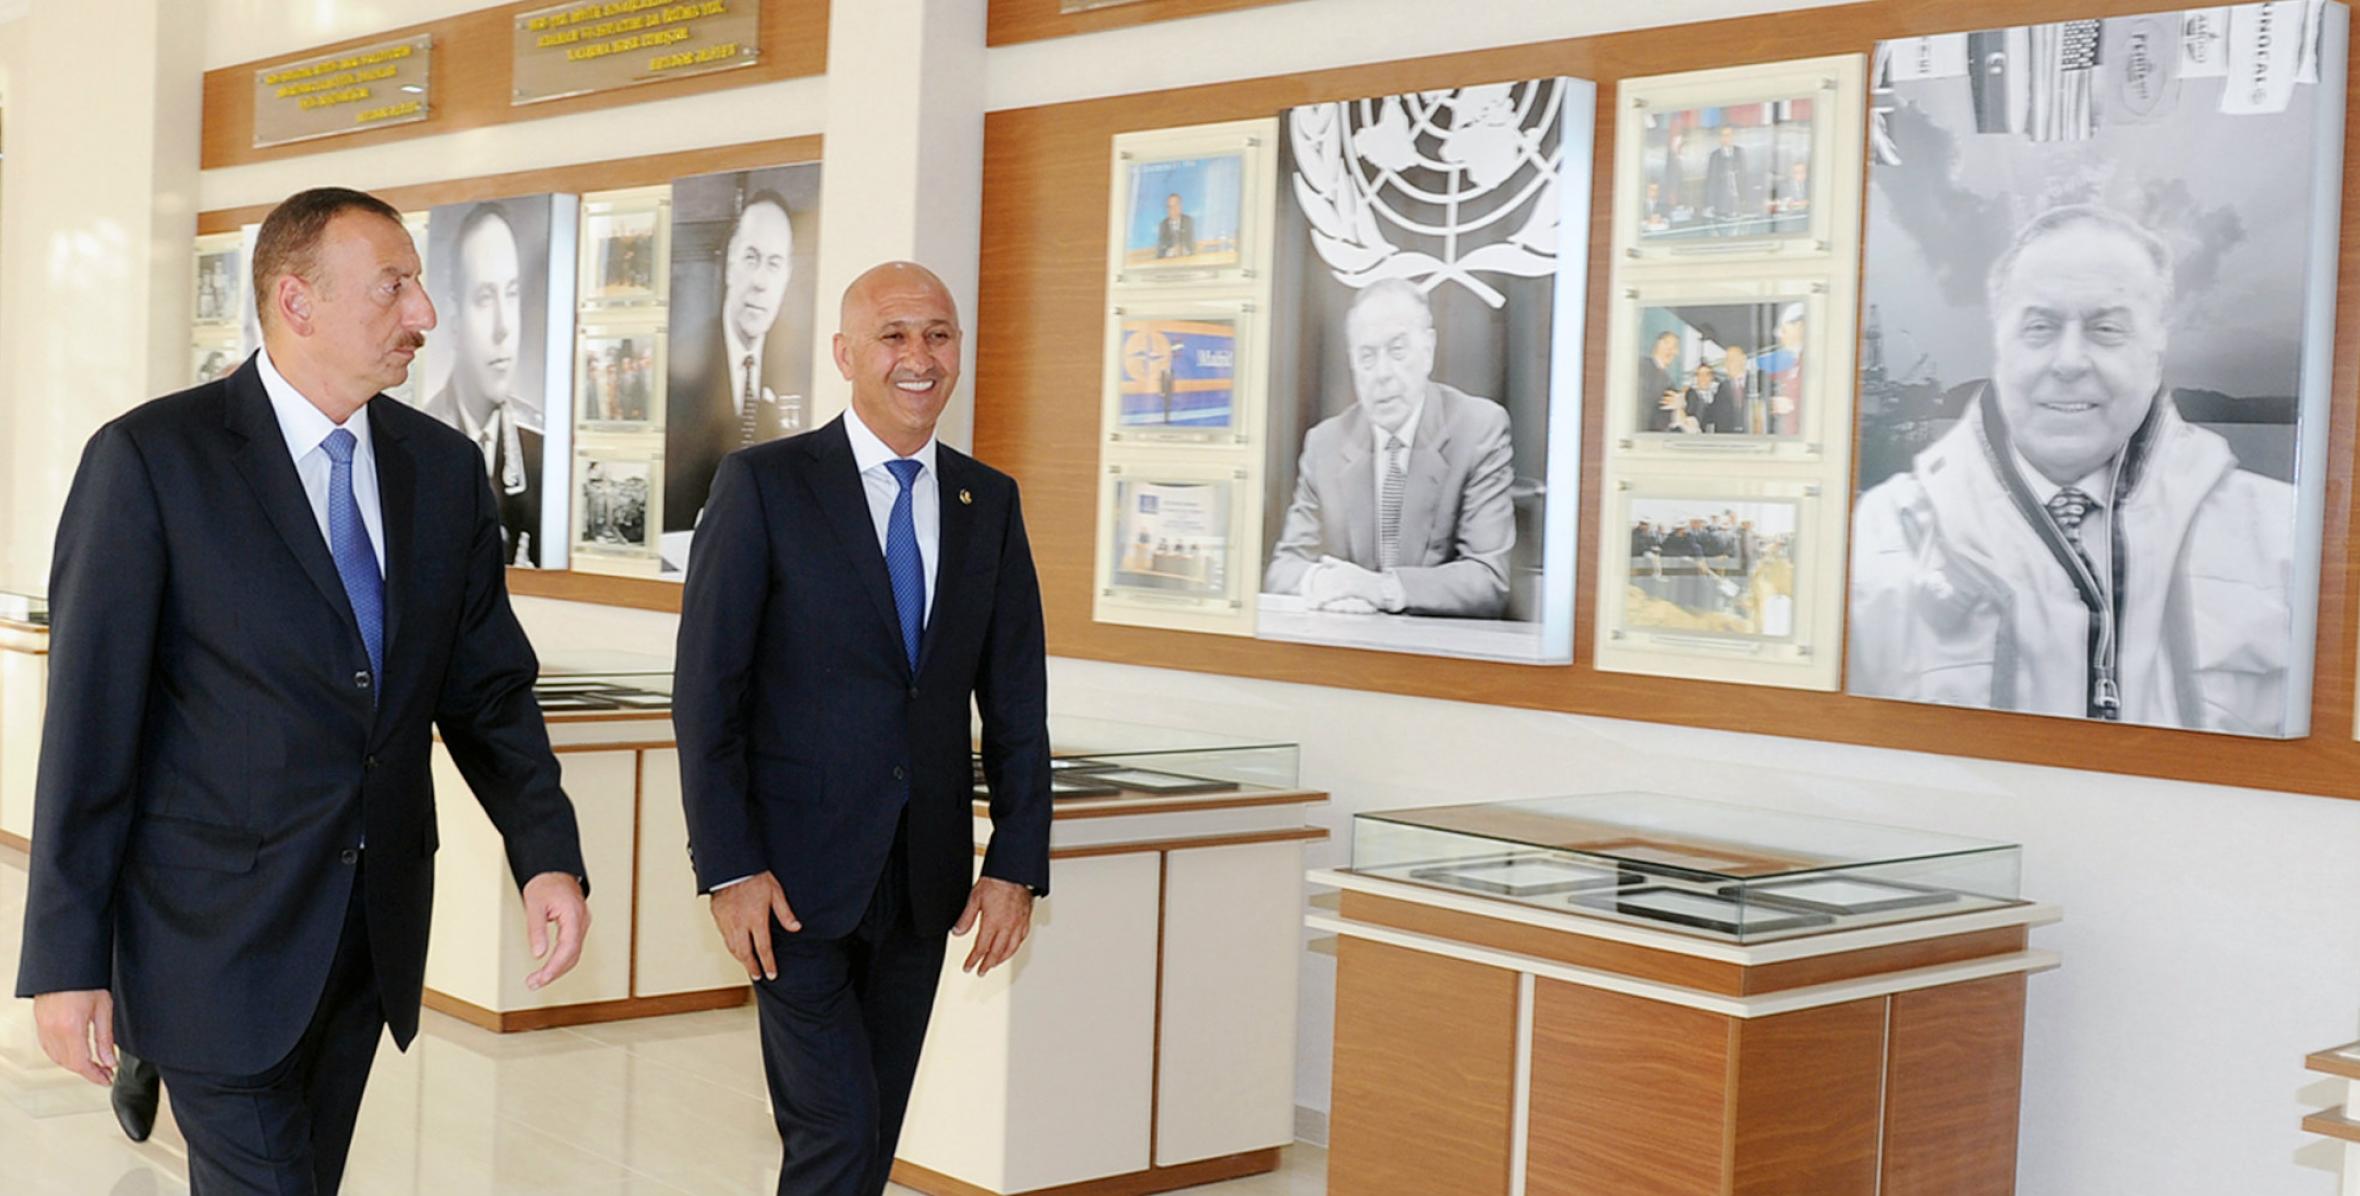 Ilham Aliyev attended the opening of the Heydar Aliyev Center in Siyazan